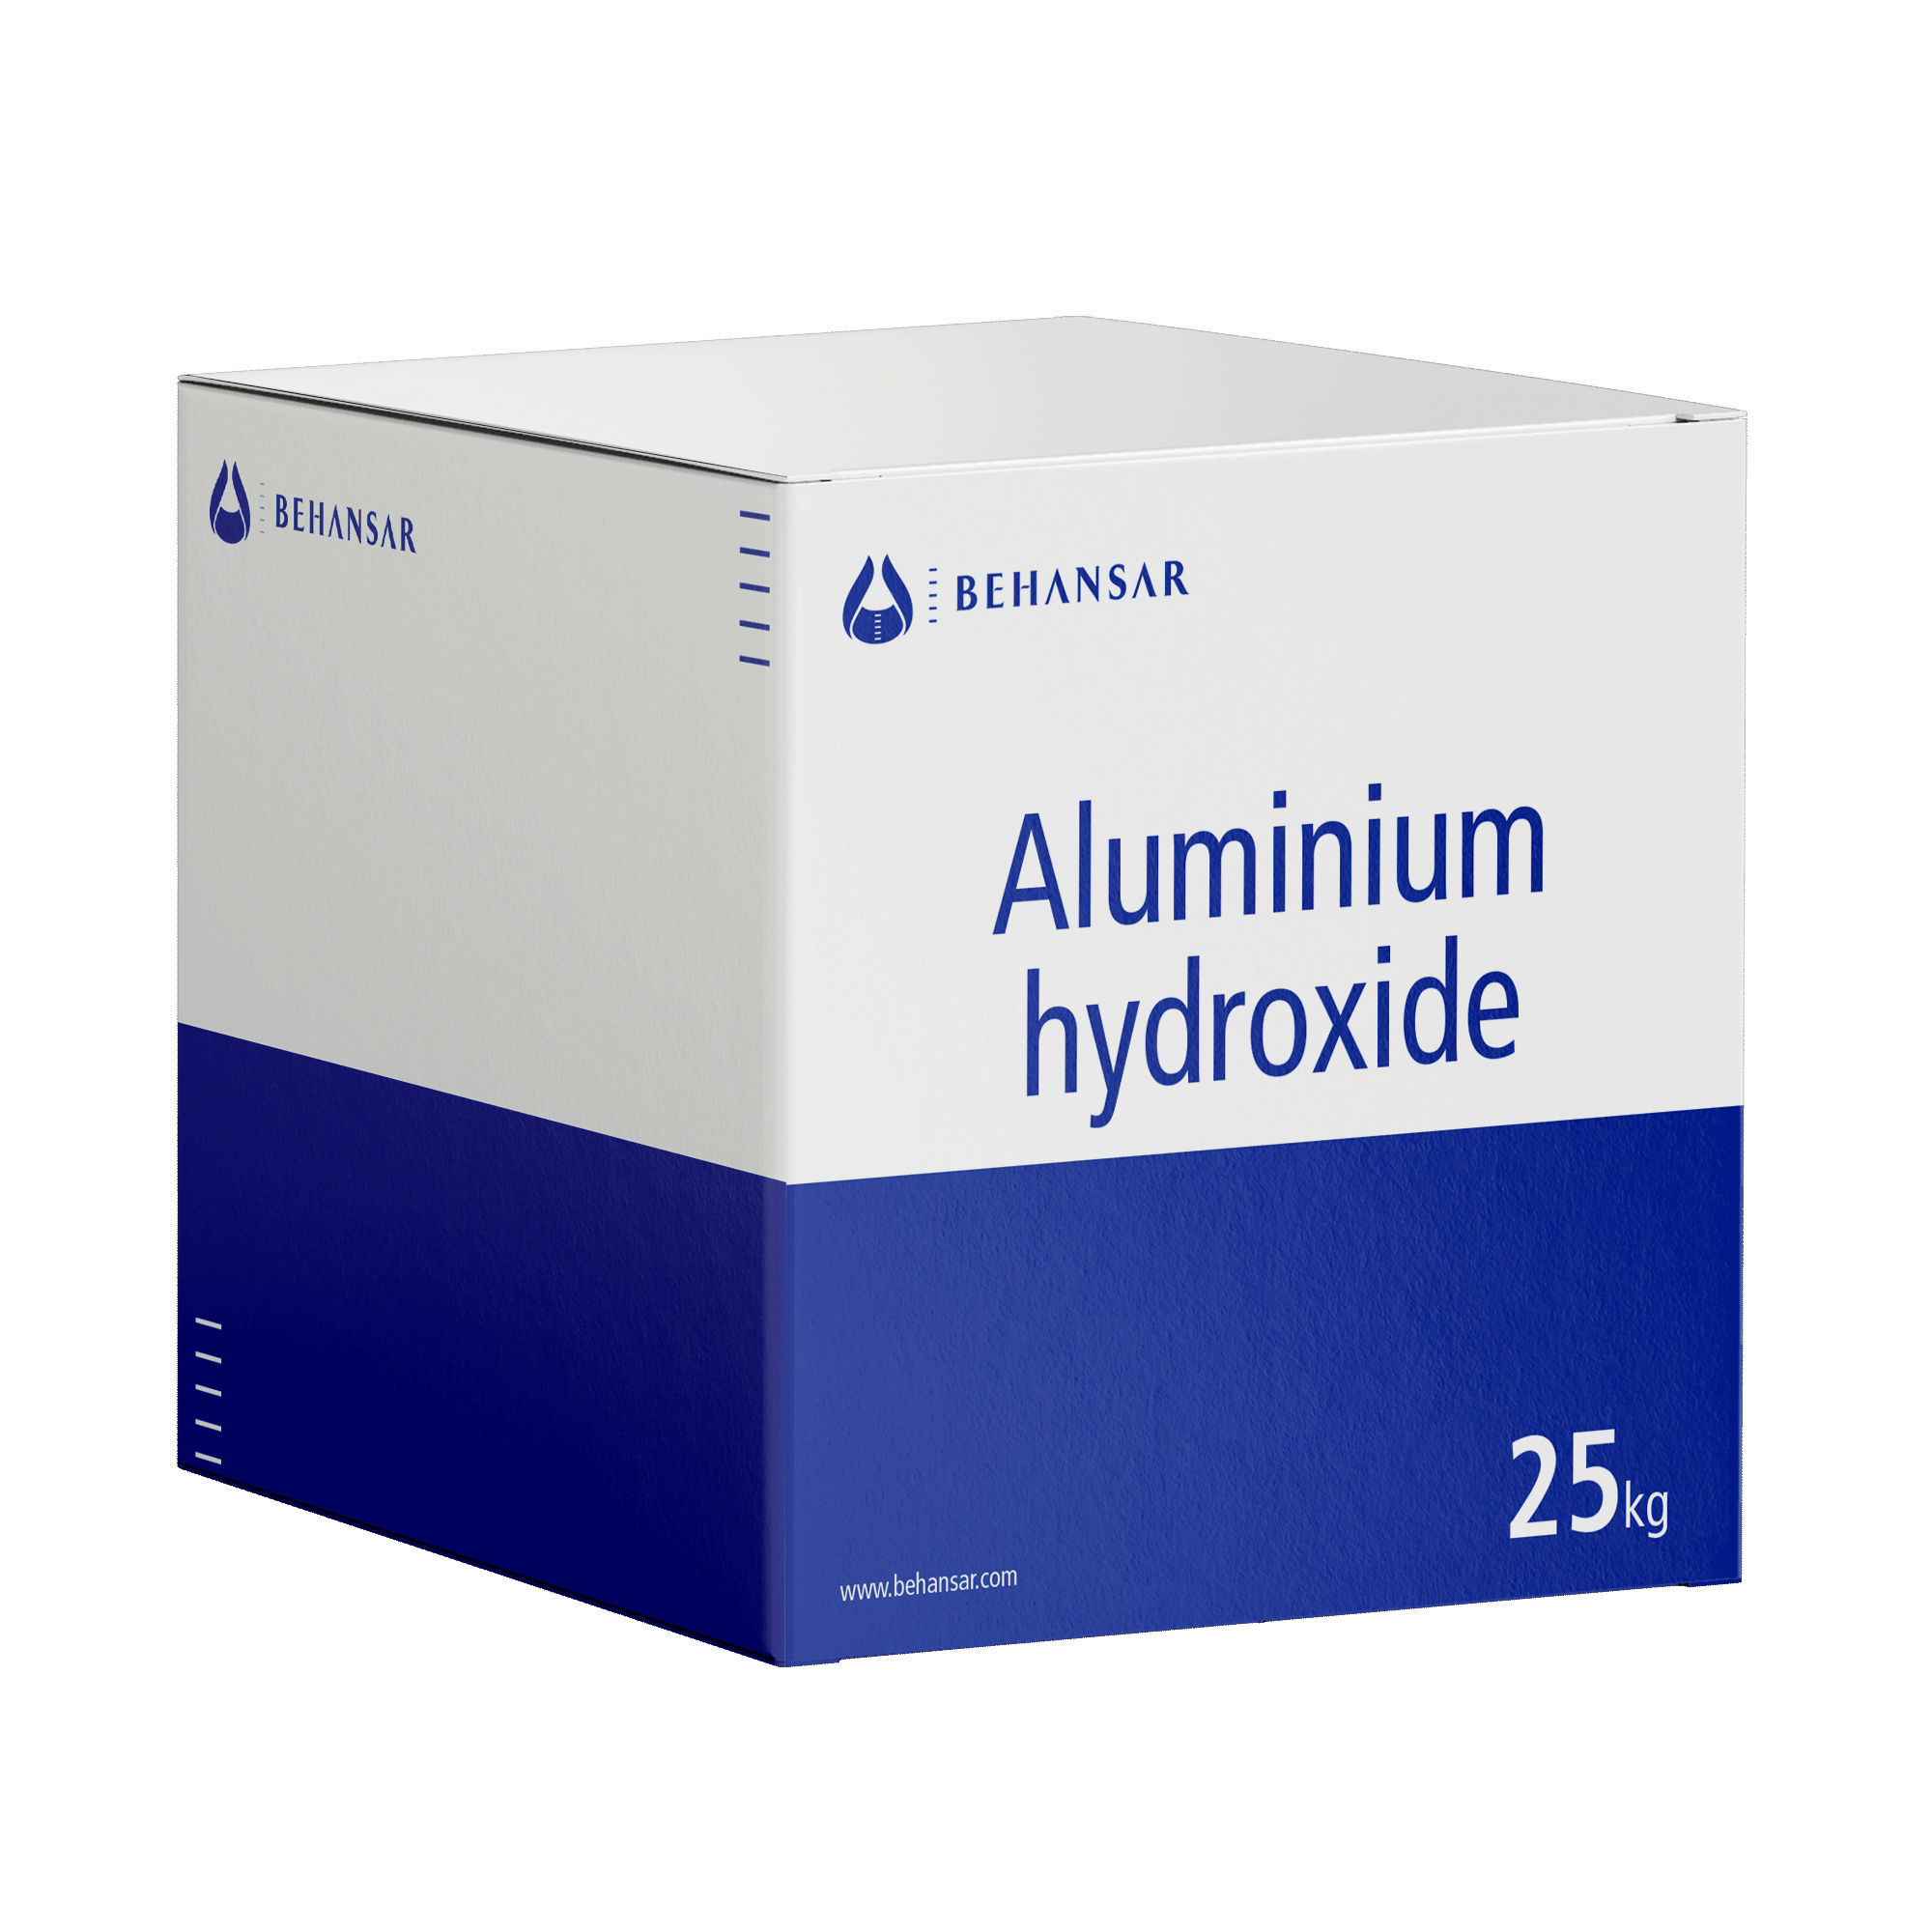 آلومینیوم هیدروکساید یکی از تولیدات شرکت بهانسار است